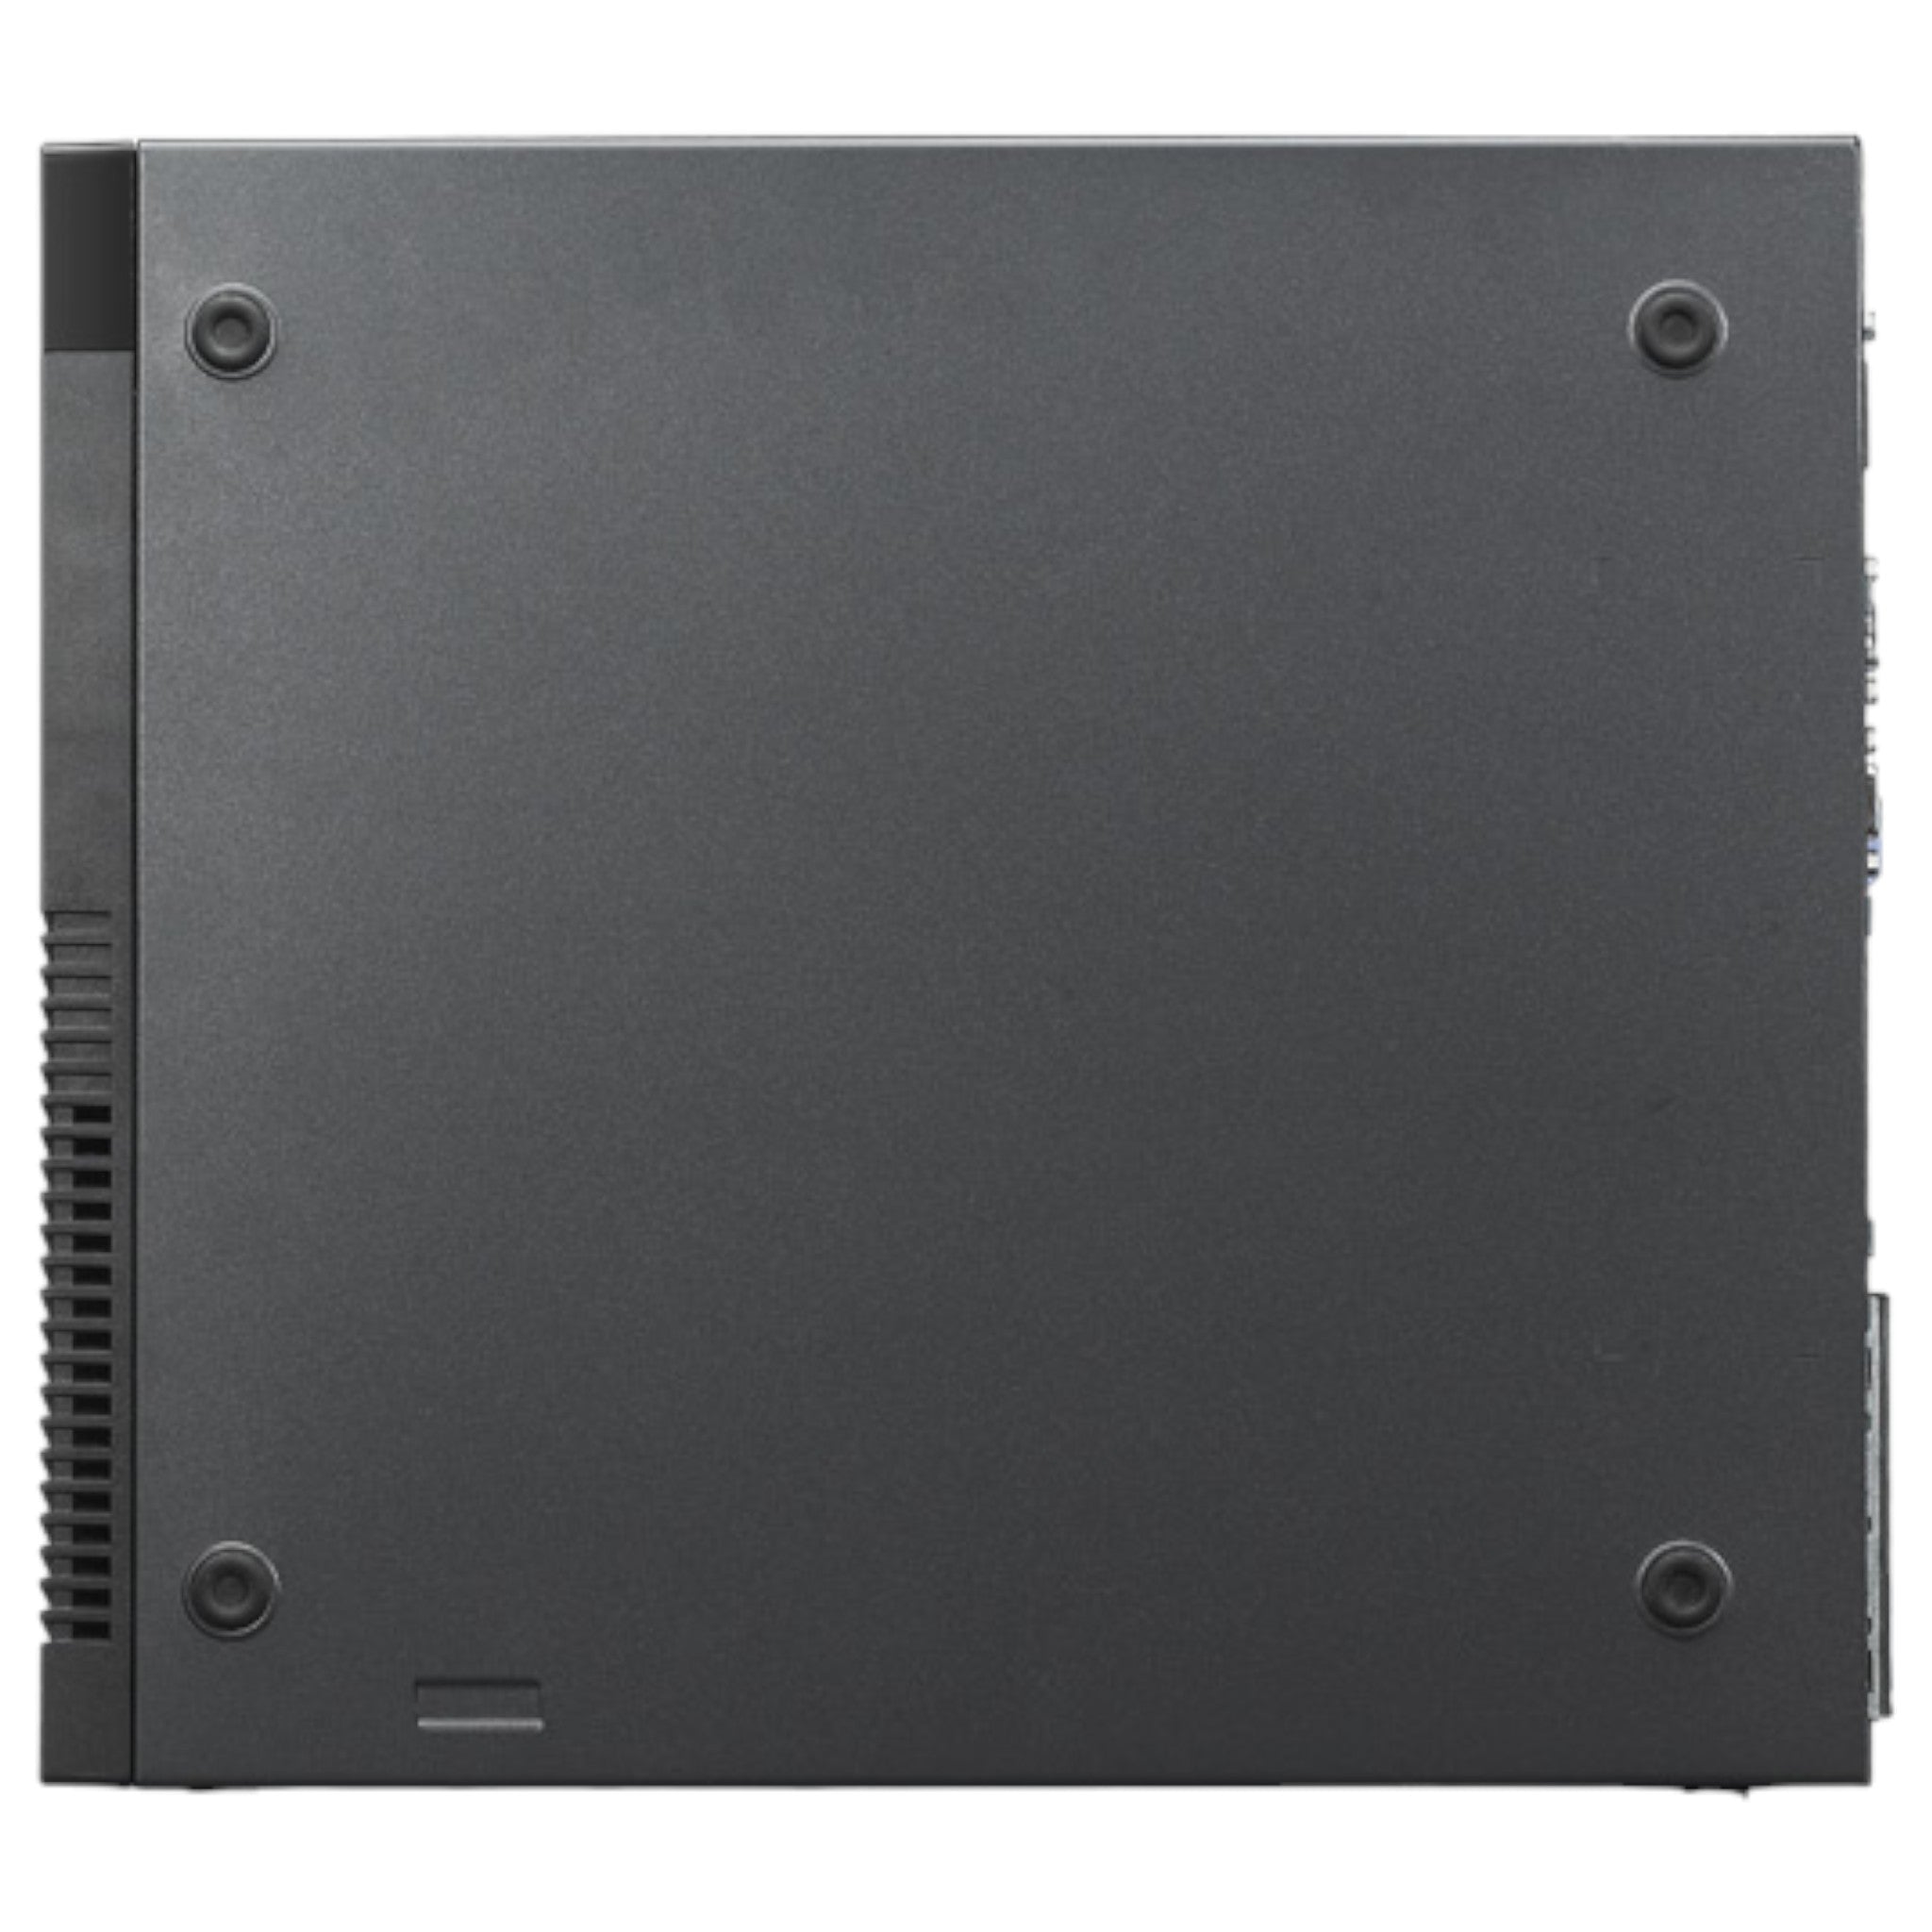 Lenovo ThinkCentre M82 SFF | G2020 | 4 GB | 500 GB HDD | DVD/RW - computify